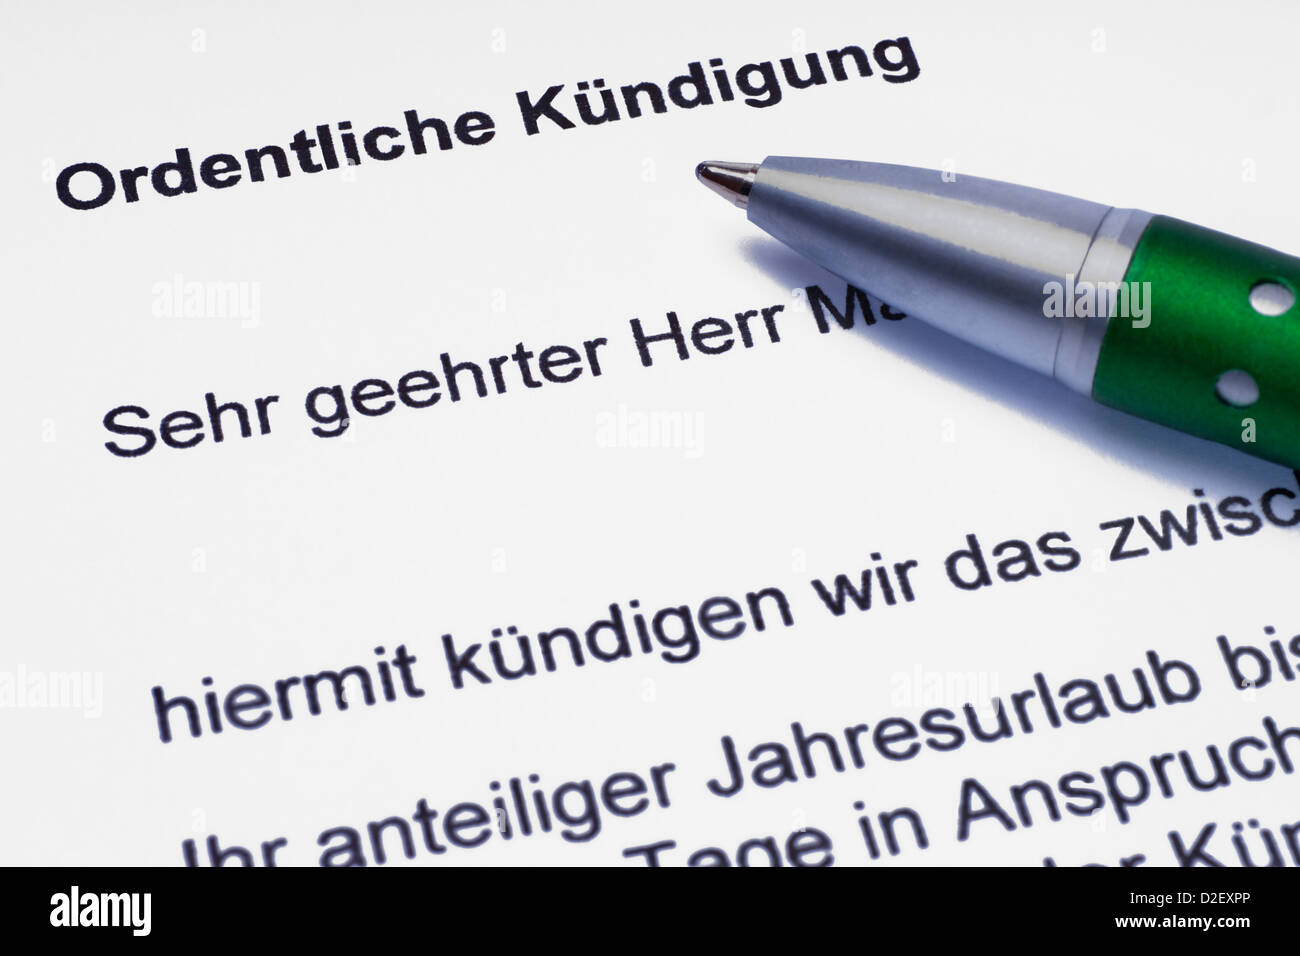 ein Brief 'Ordentliche Kündigung', ein Stift liegt dabei | a letter 'ordinary dismissal', a pen is alongside Stock Photo